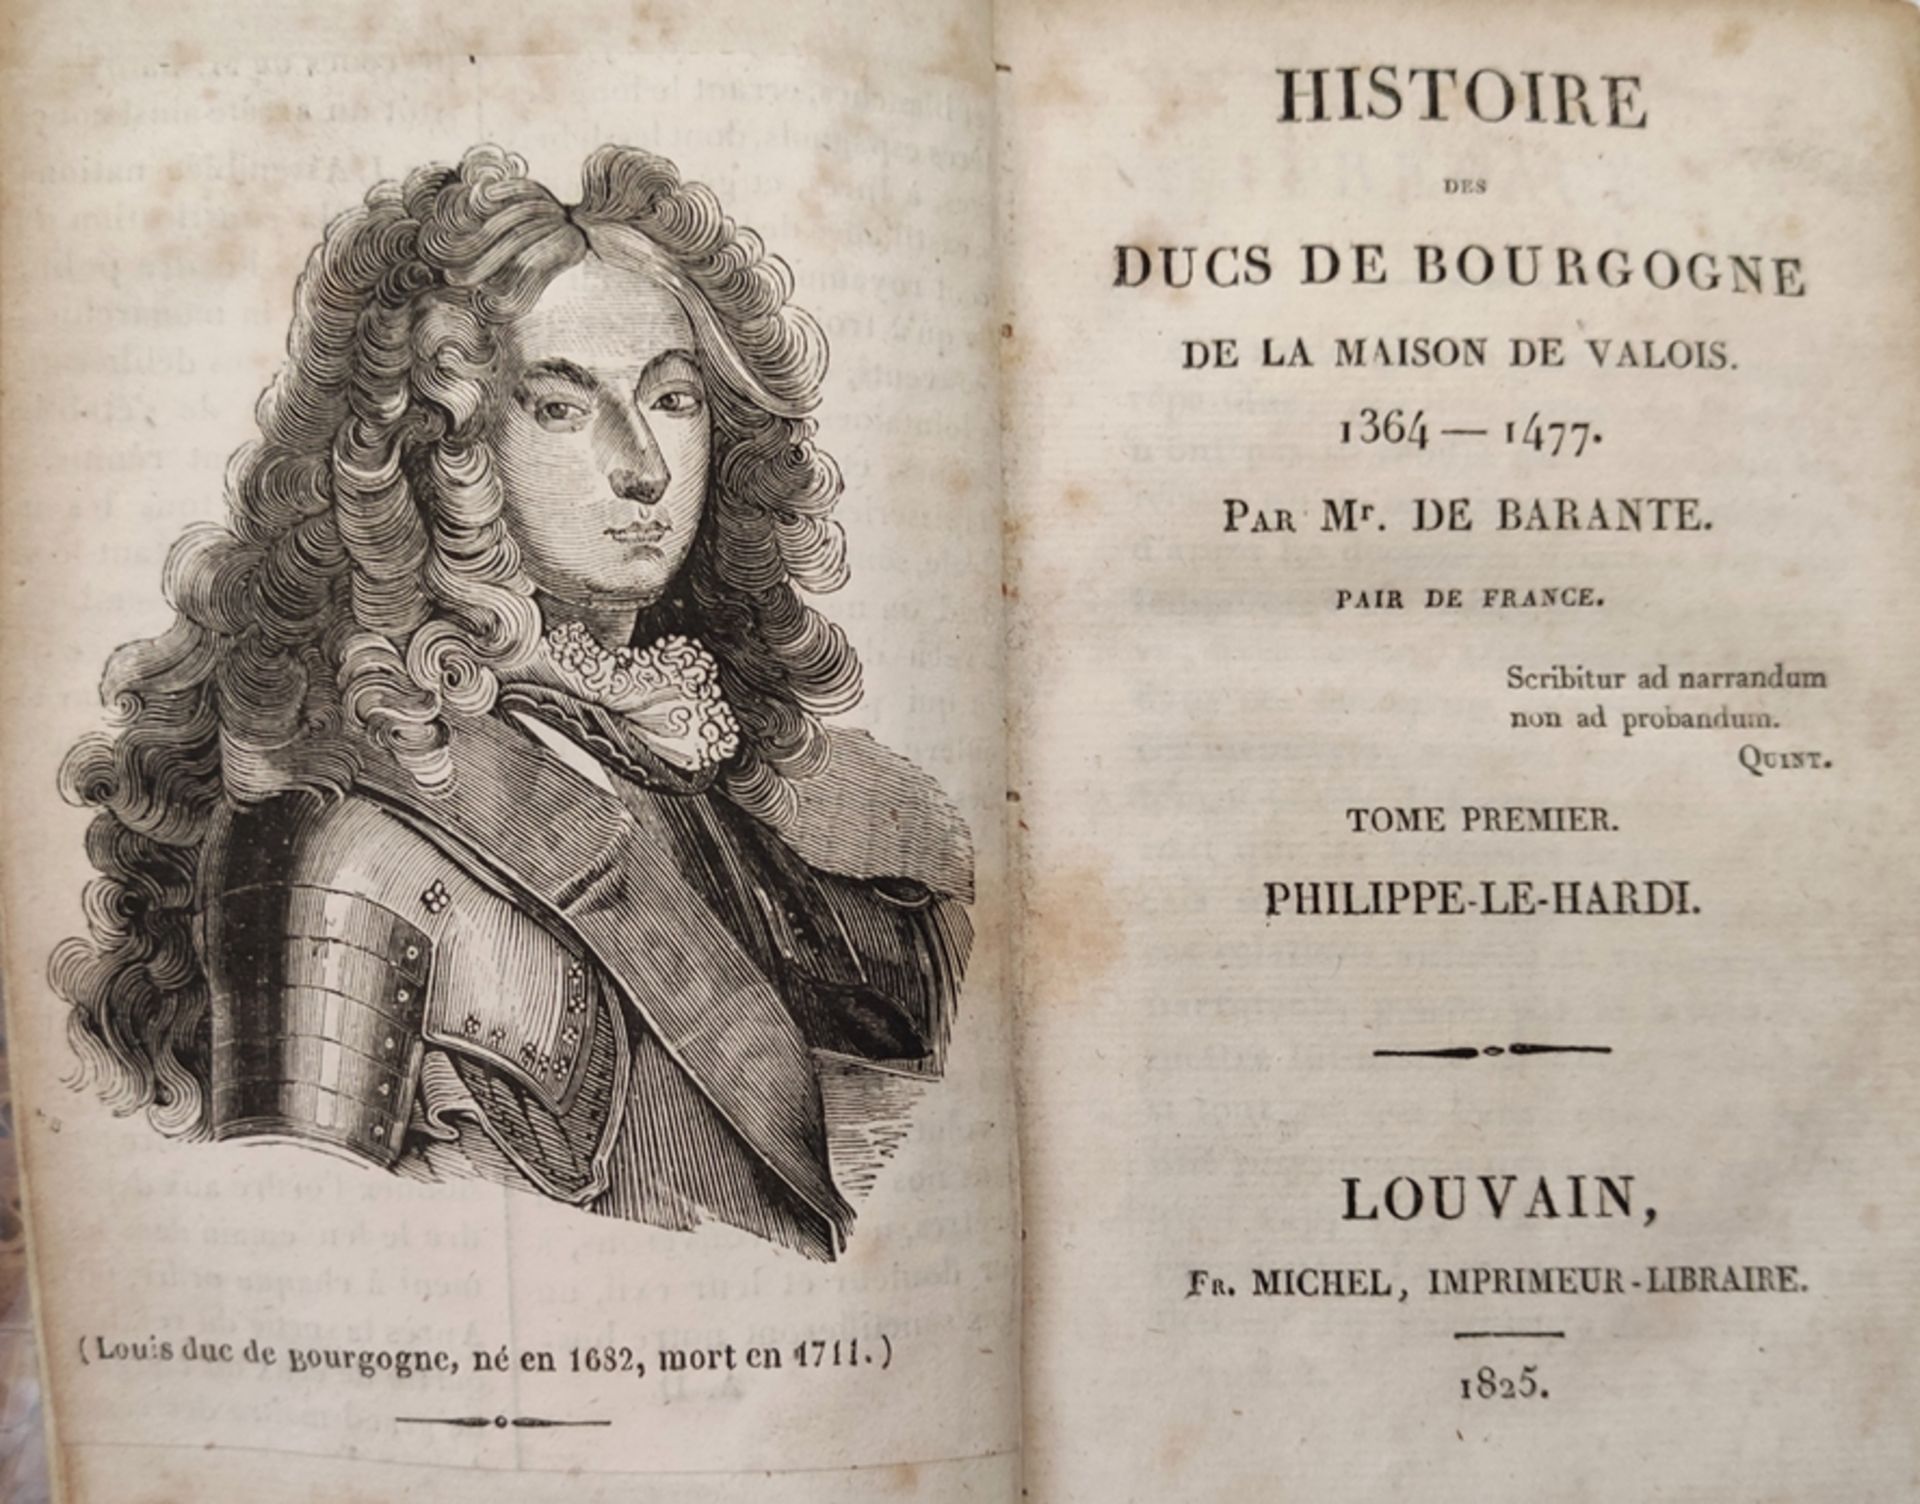 16 volumes "Histoire des Ducs de Bourgogne" and another volume "Visages de la Bourgogne", consistin